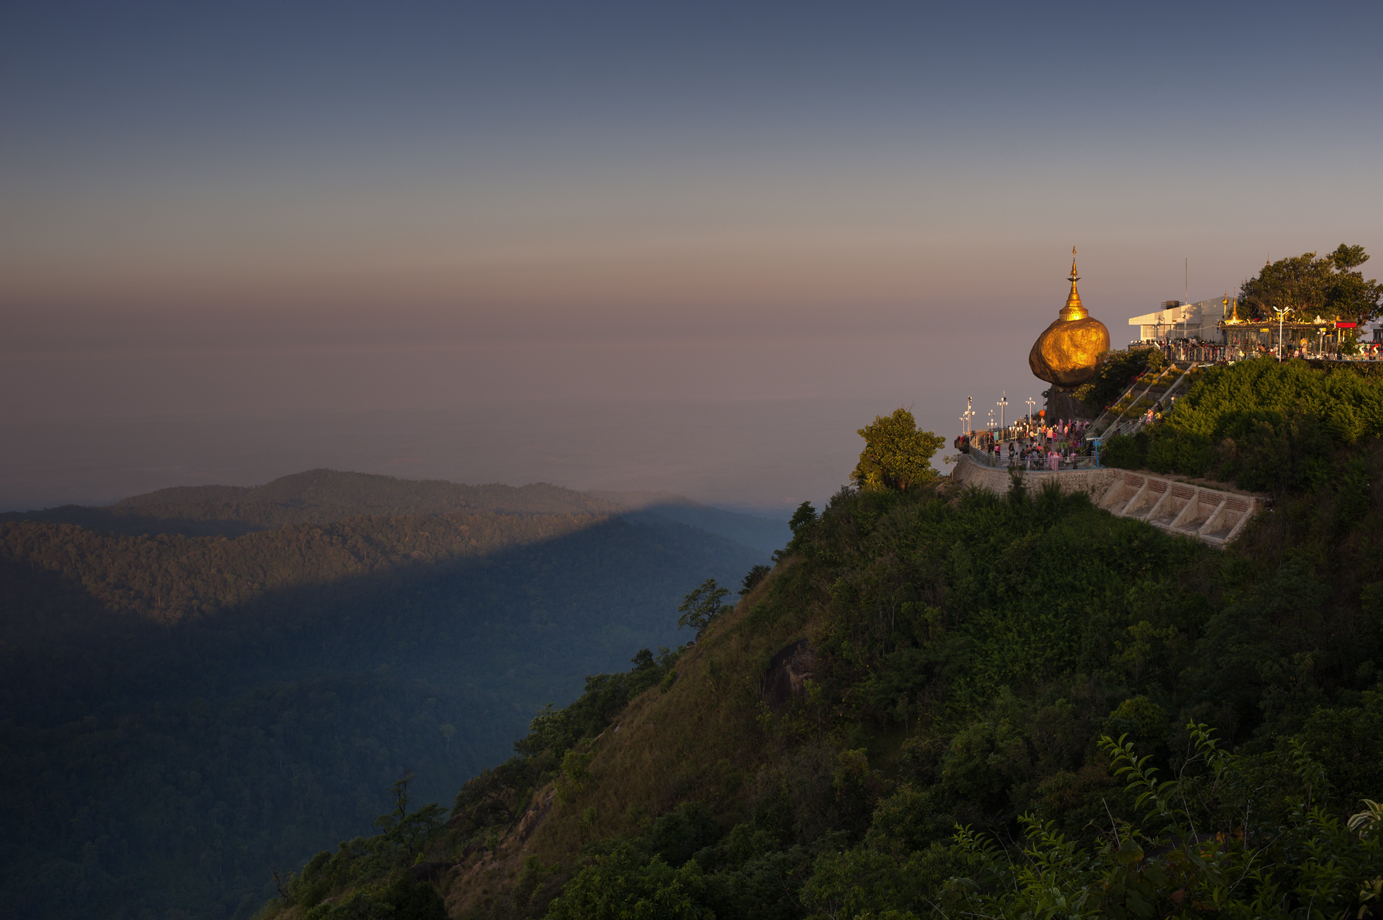  Kyaiktiyo Pagoda, Mon State/ Burma 